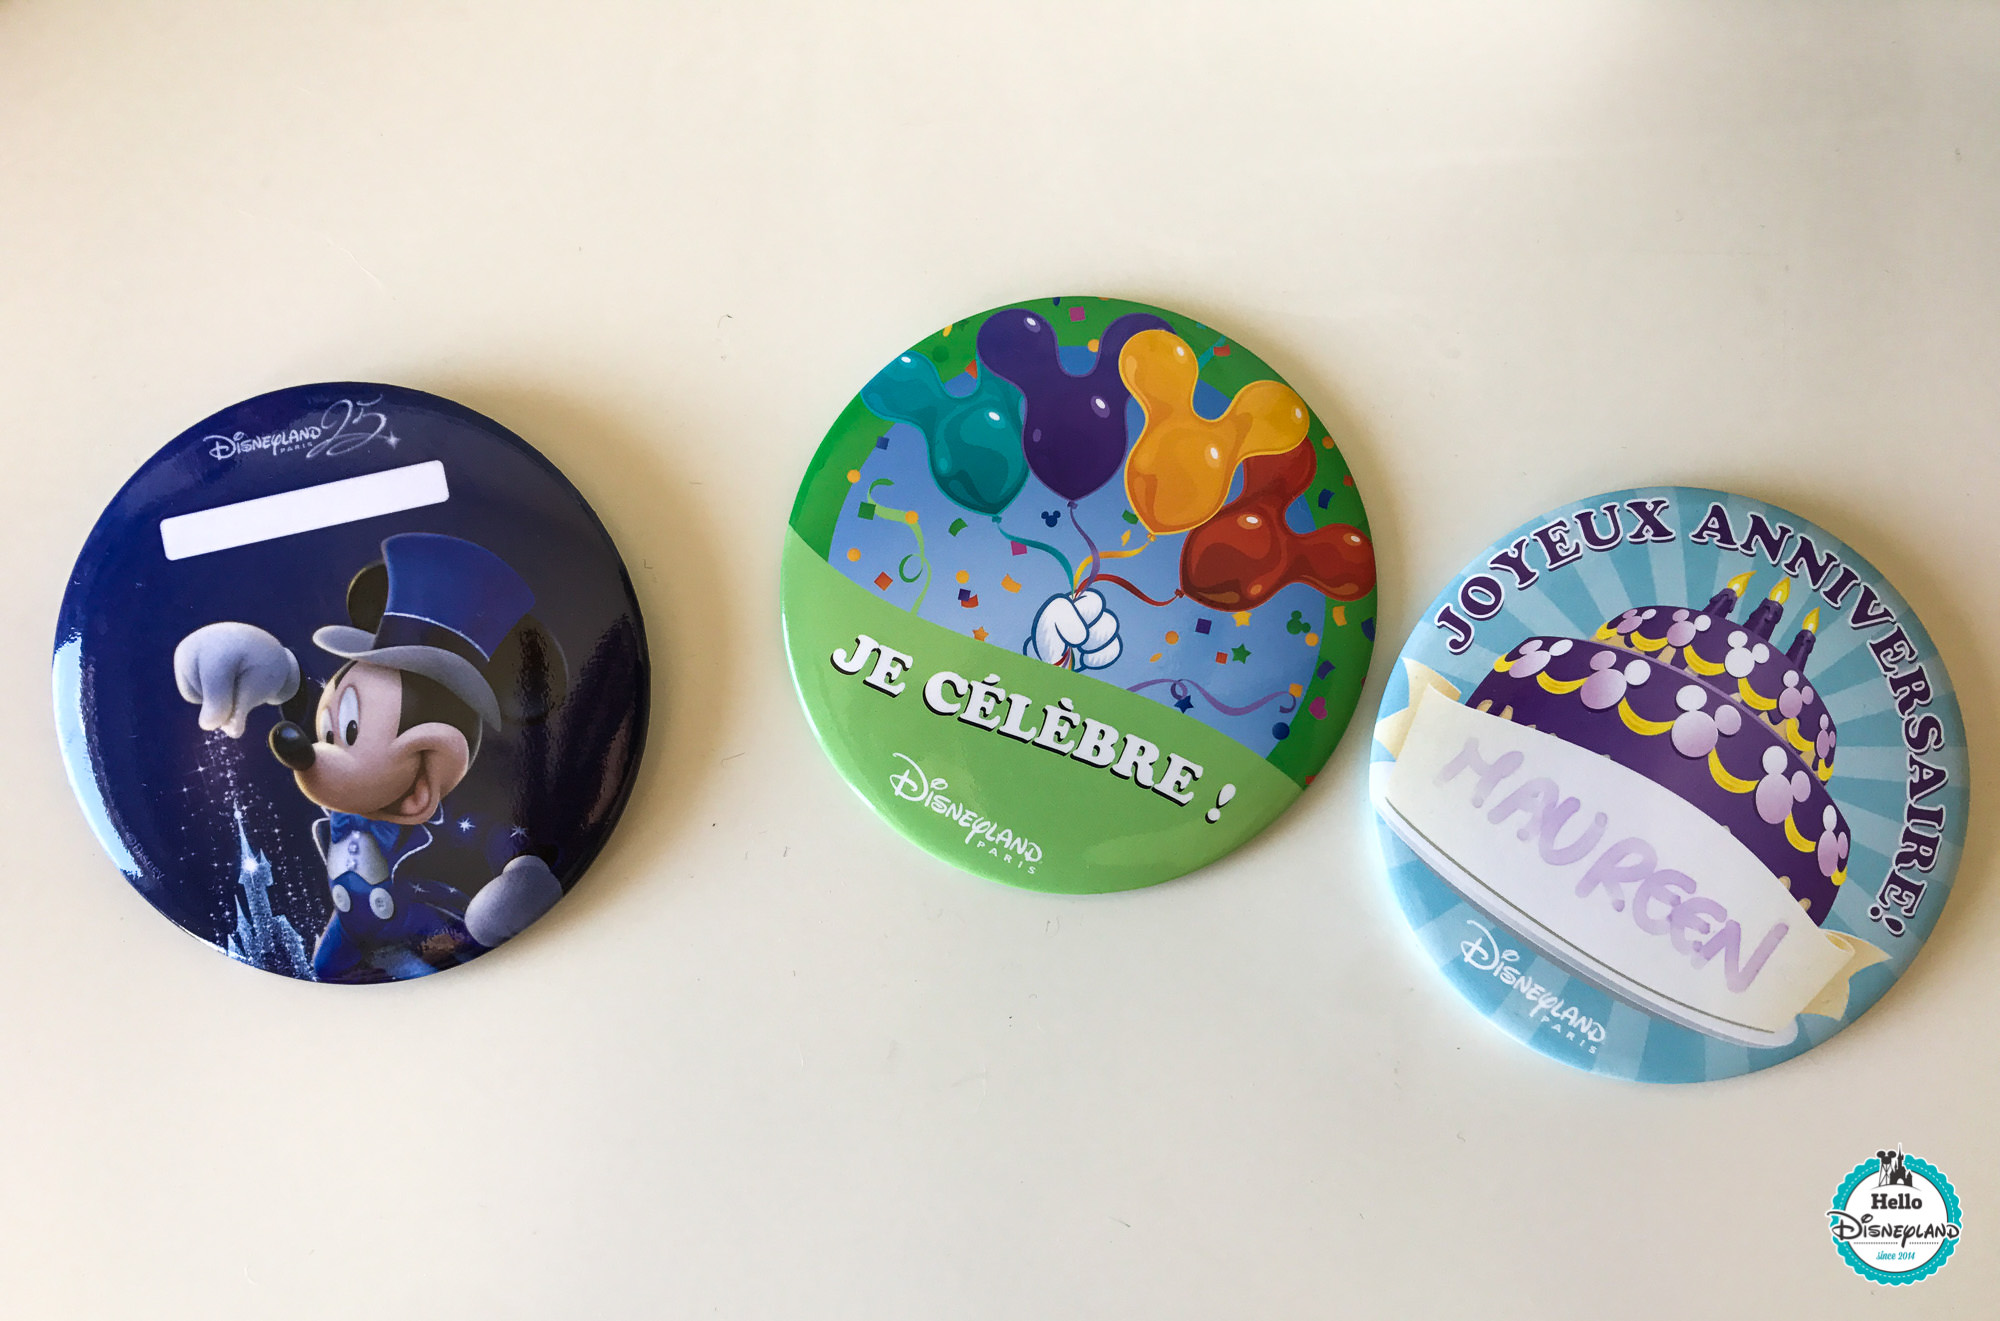 Ou Trouver Les Badges Anniversaire Et Celebration A Disneyland Paris Hello Disneyland